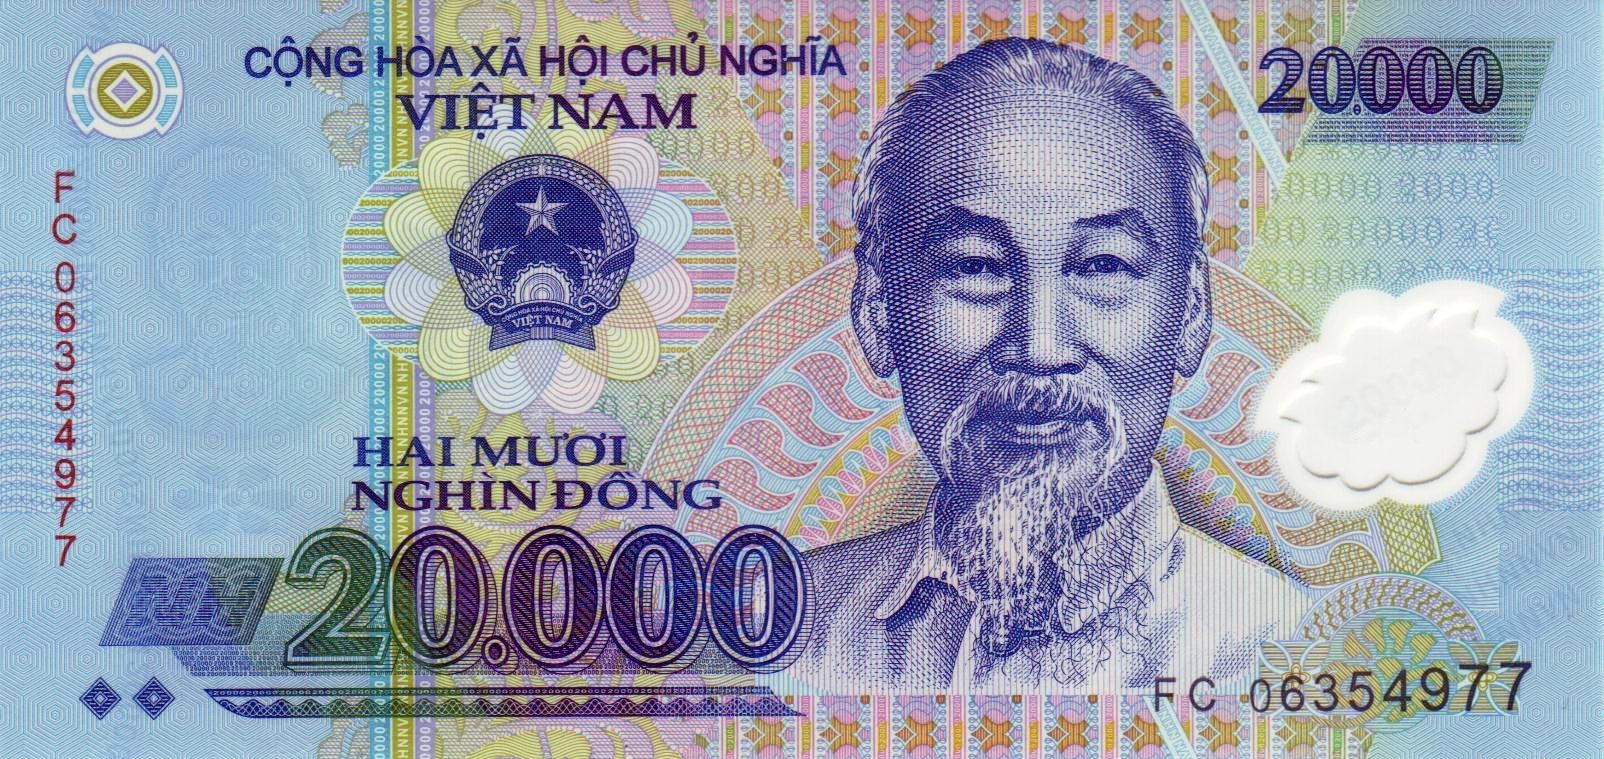 Донг - национальная валюта Вьетнама